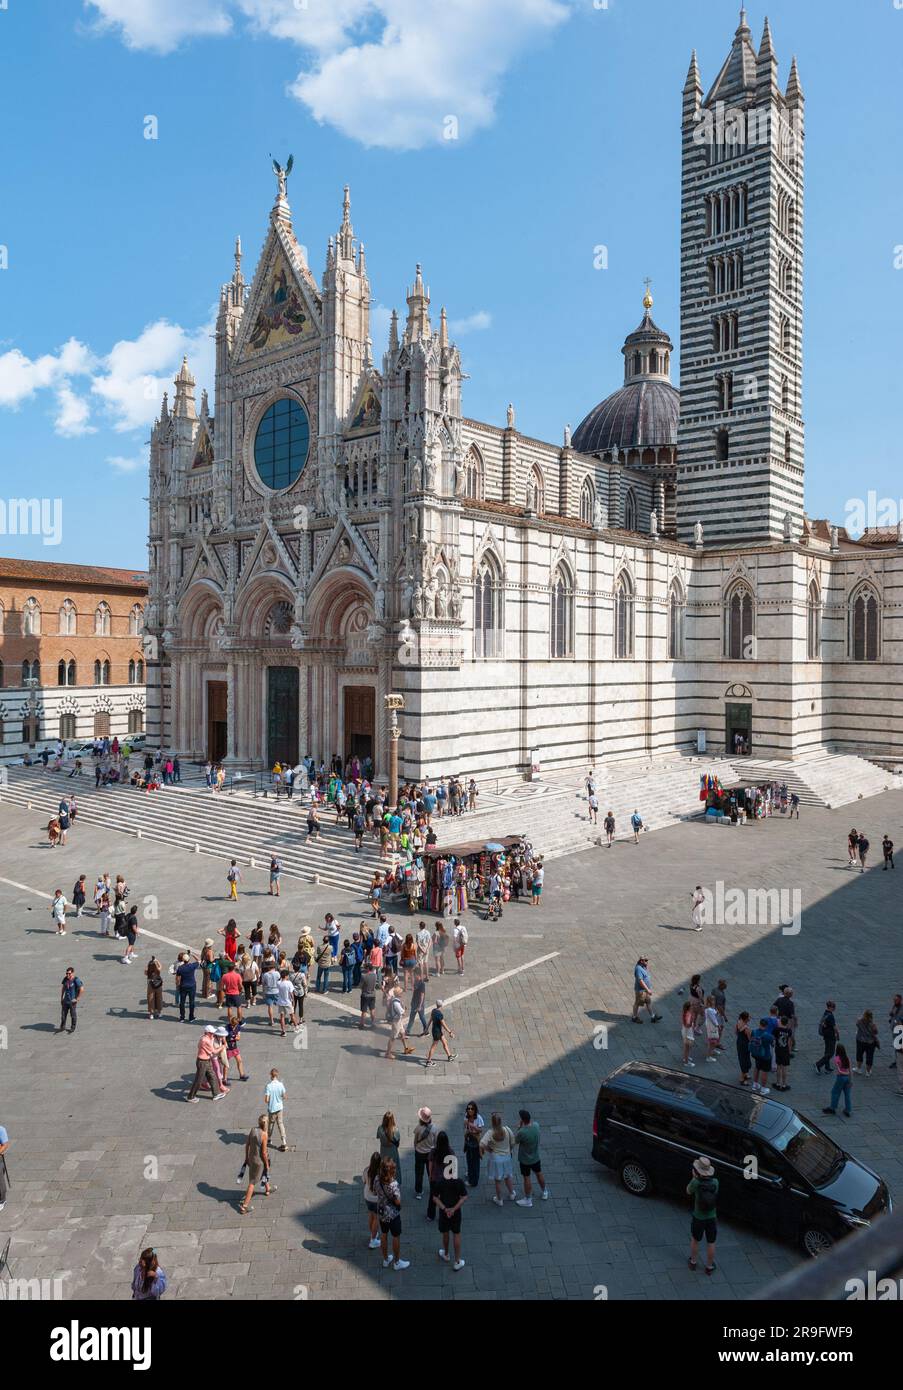 Die Kathedrale von Siena ist eine mittelalterliche Kirche, die der Himmelfahrt Maria gewidmet ist. Sie wurde zwischen 1215 und 1263 fertiggestellt. Stockfoto